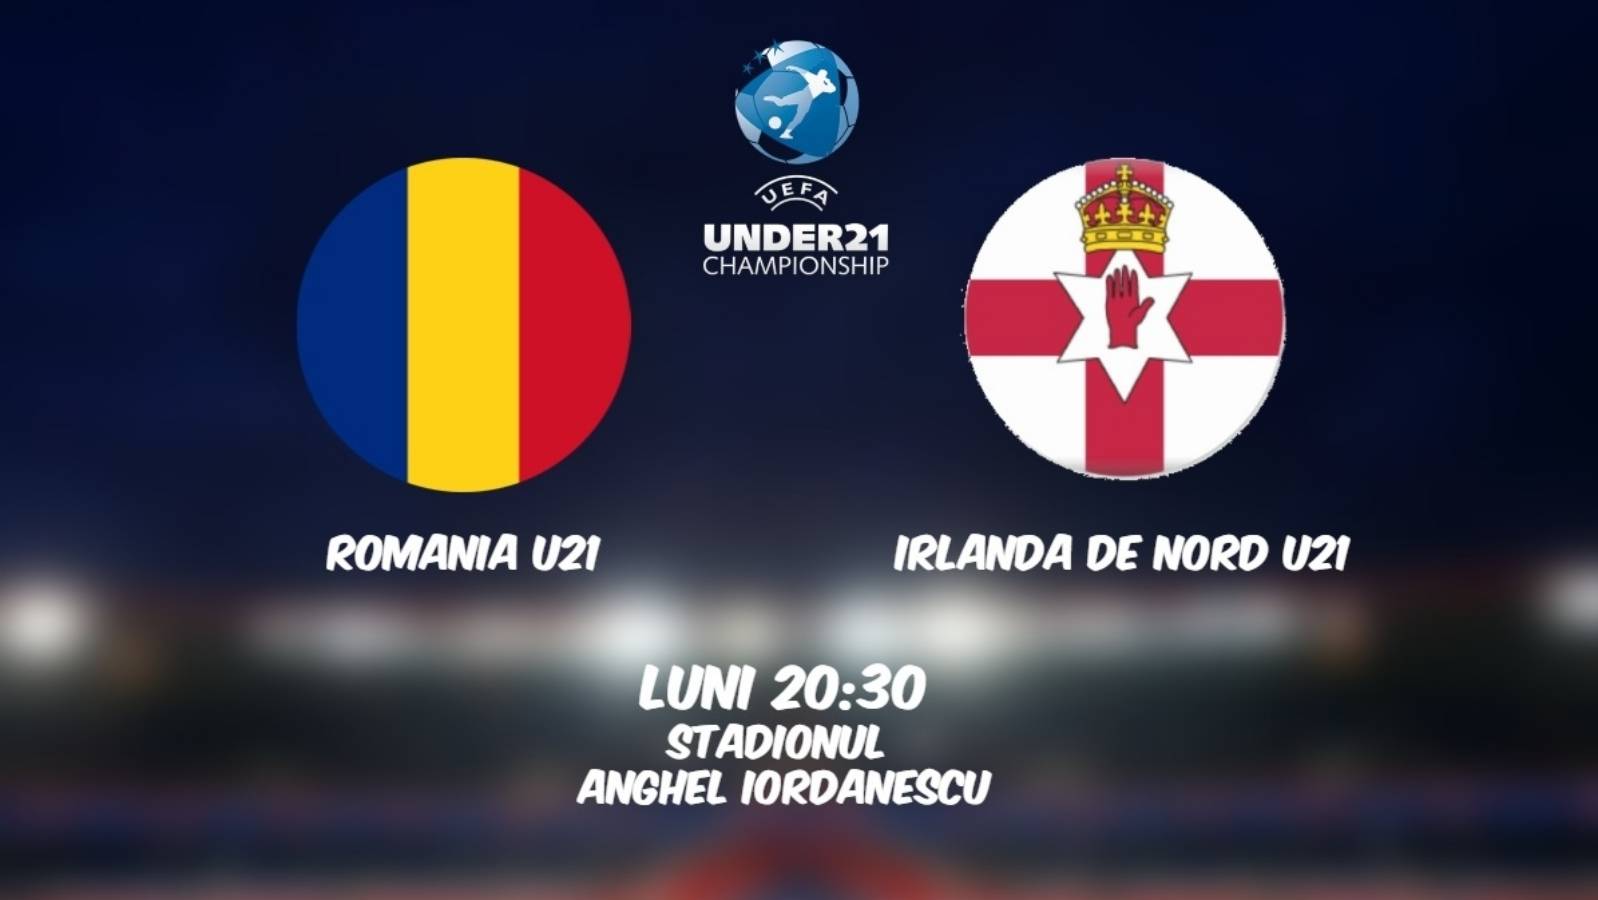 RUMANÍA U21 – IRLANDA DEL NORTE U21 LIVE PRO TV EURO 2021